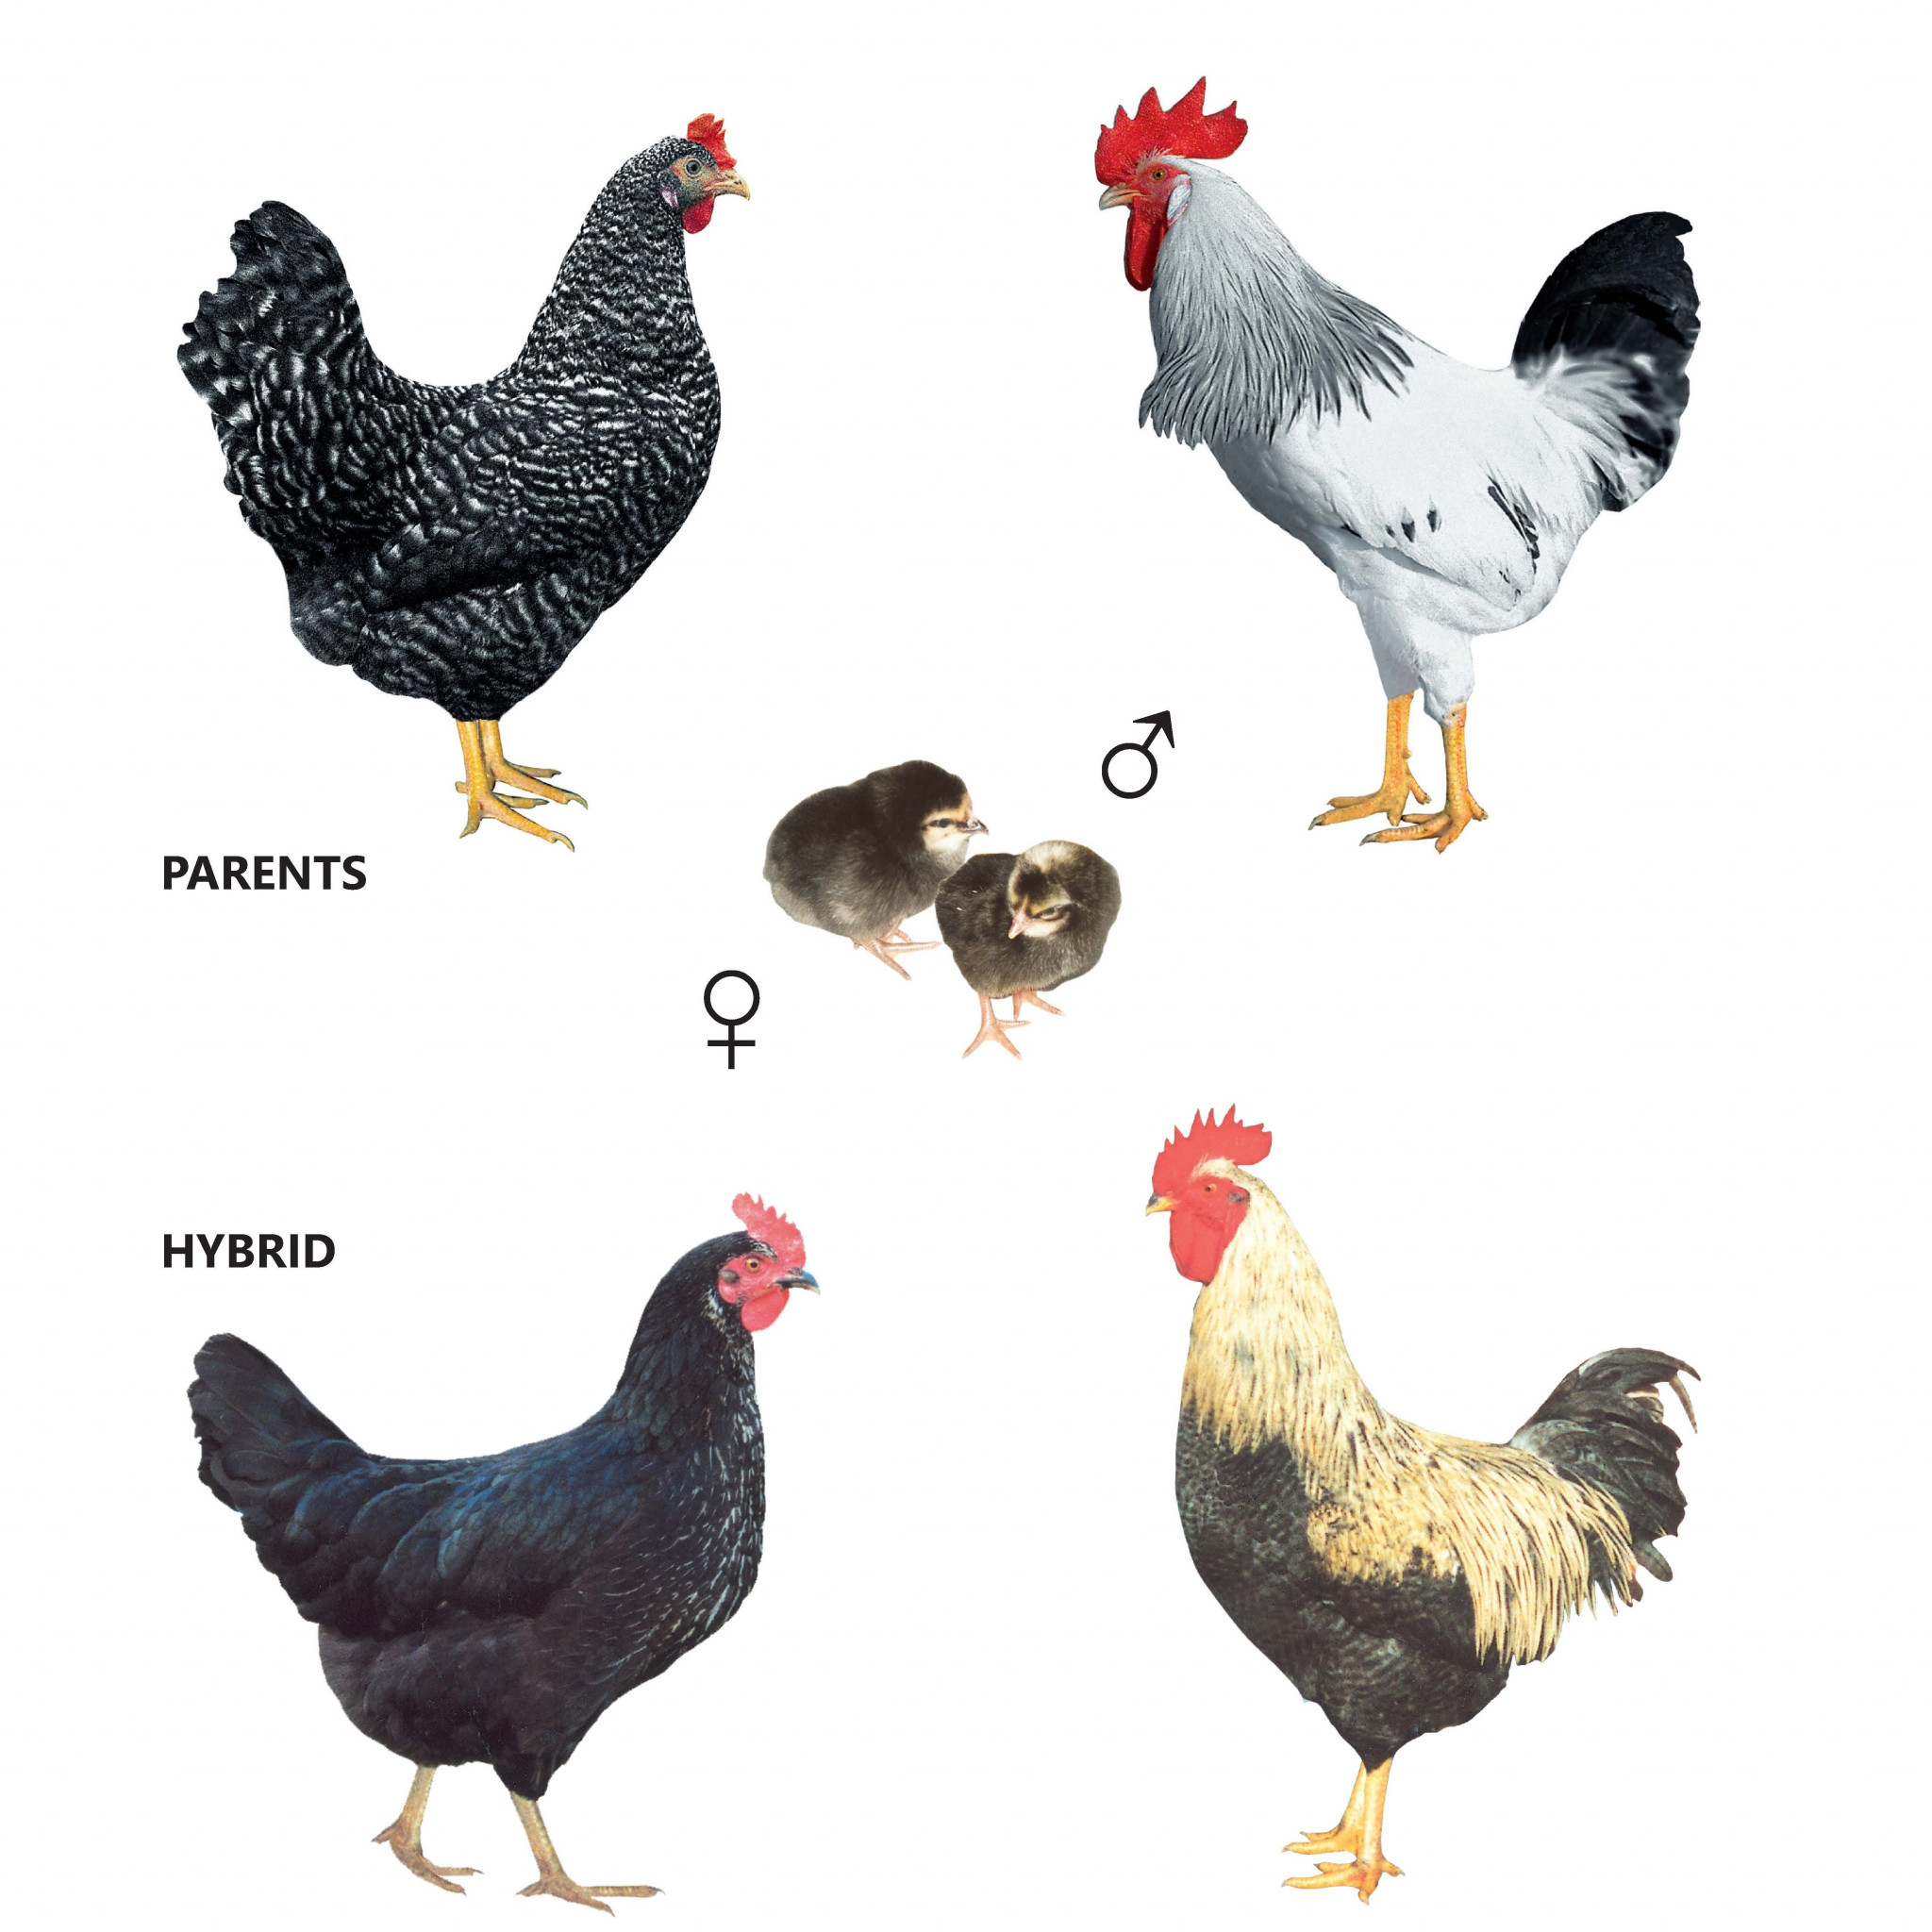 Курица доминанта порода описание породы